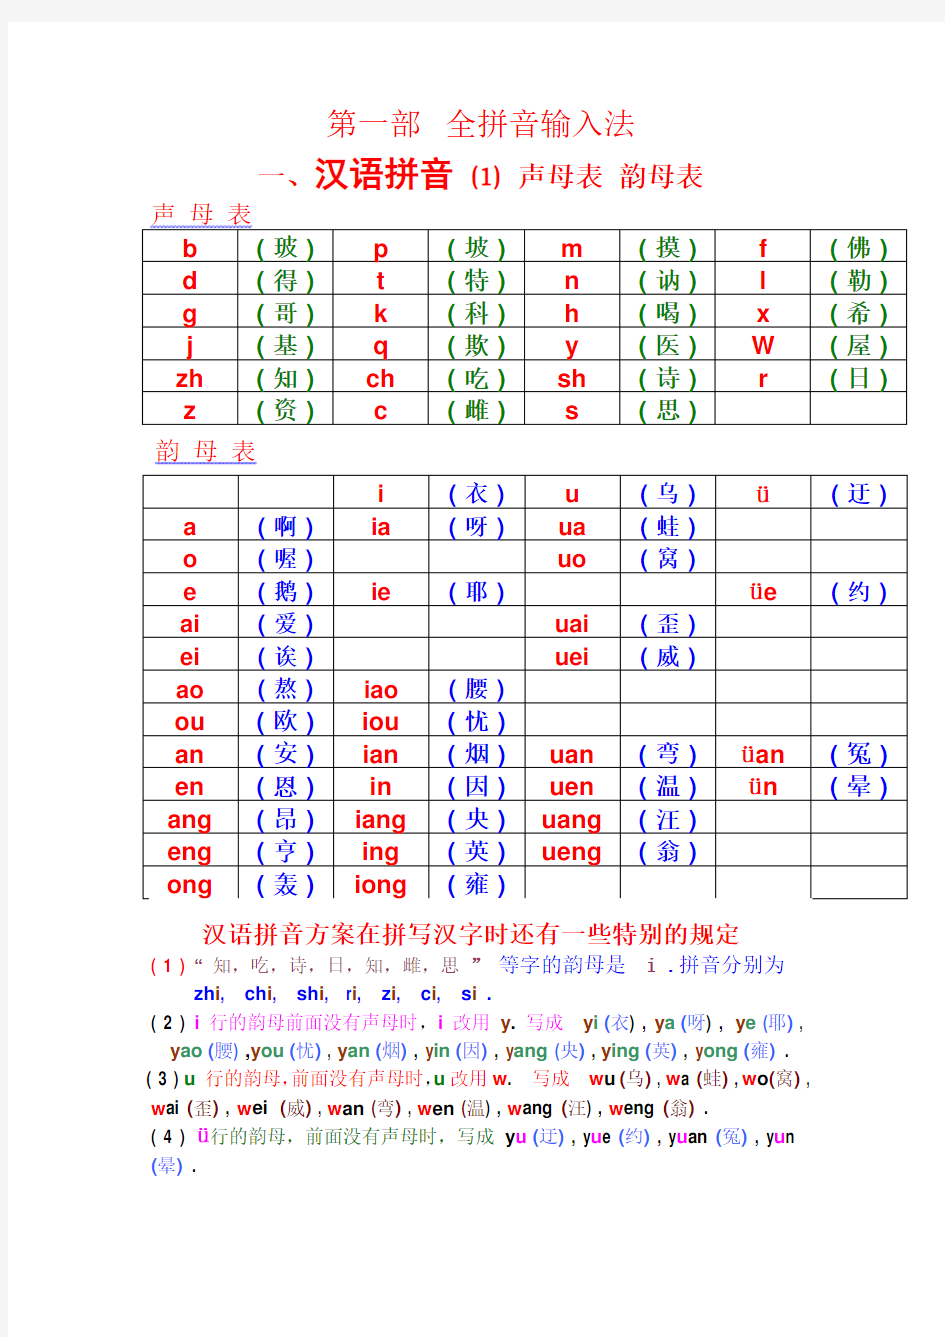 汉语拼音——声母_韵母全表